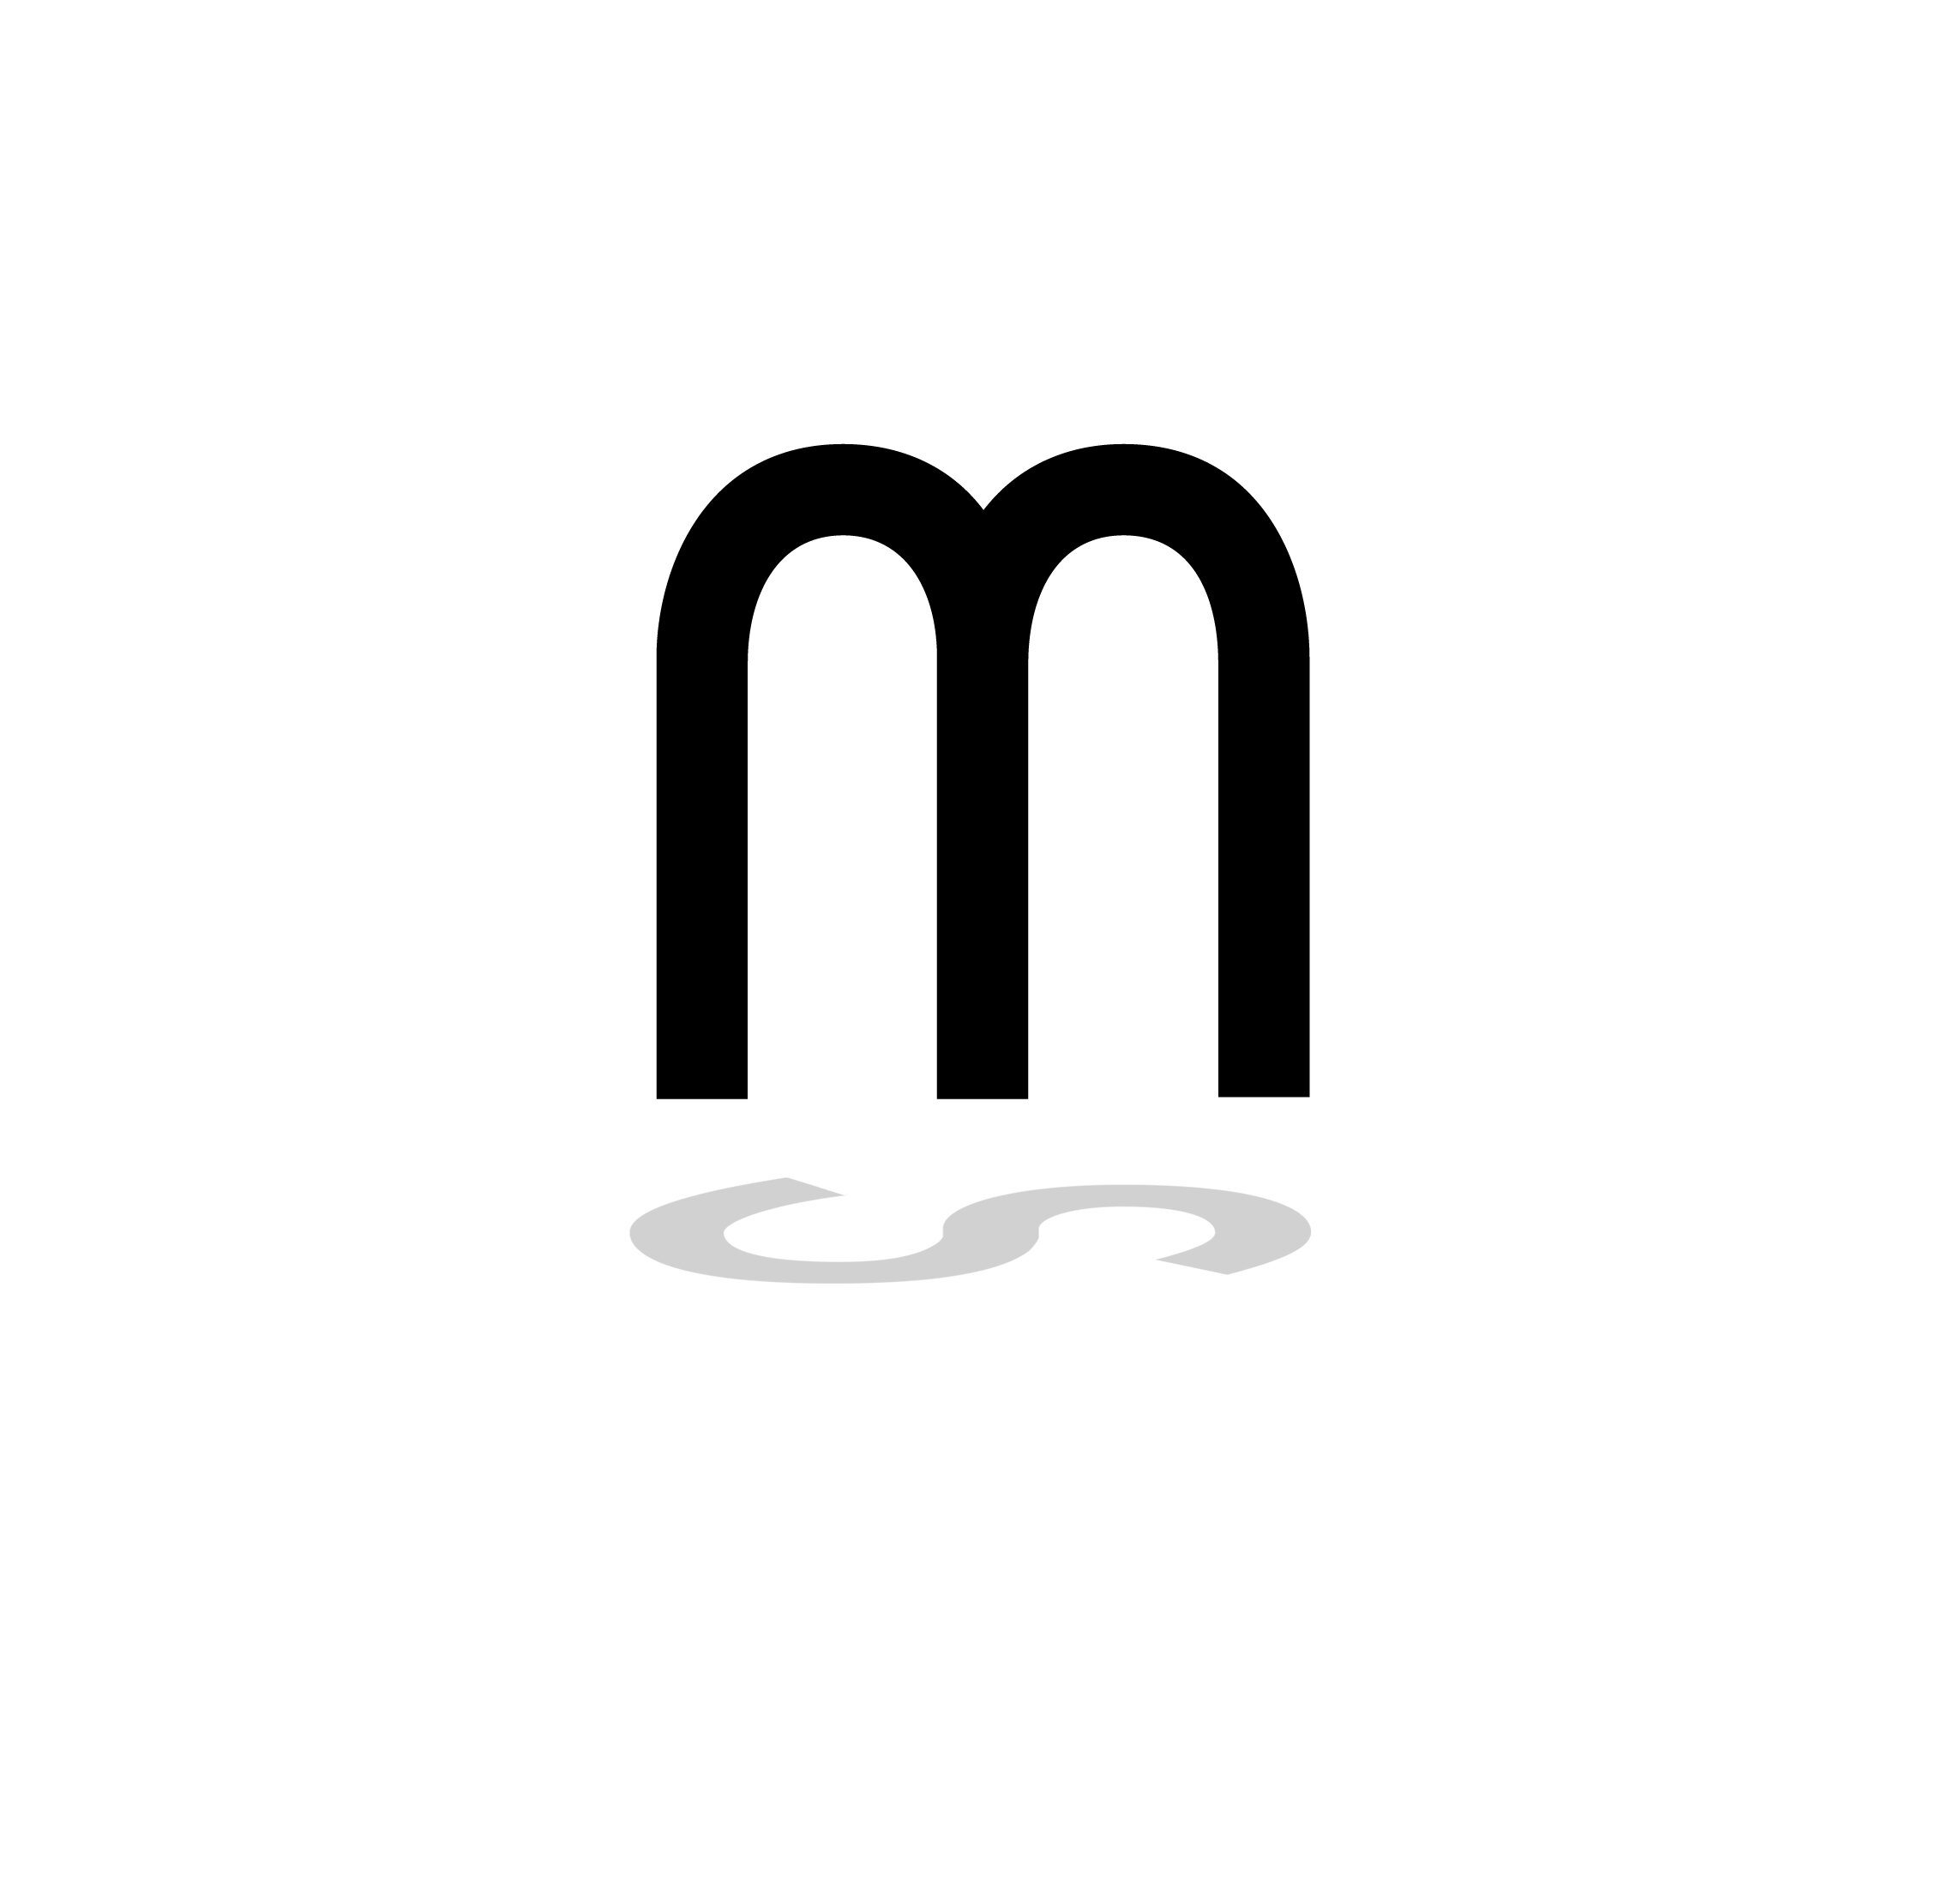 metasurface_logo.jpg